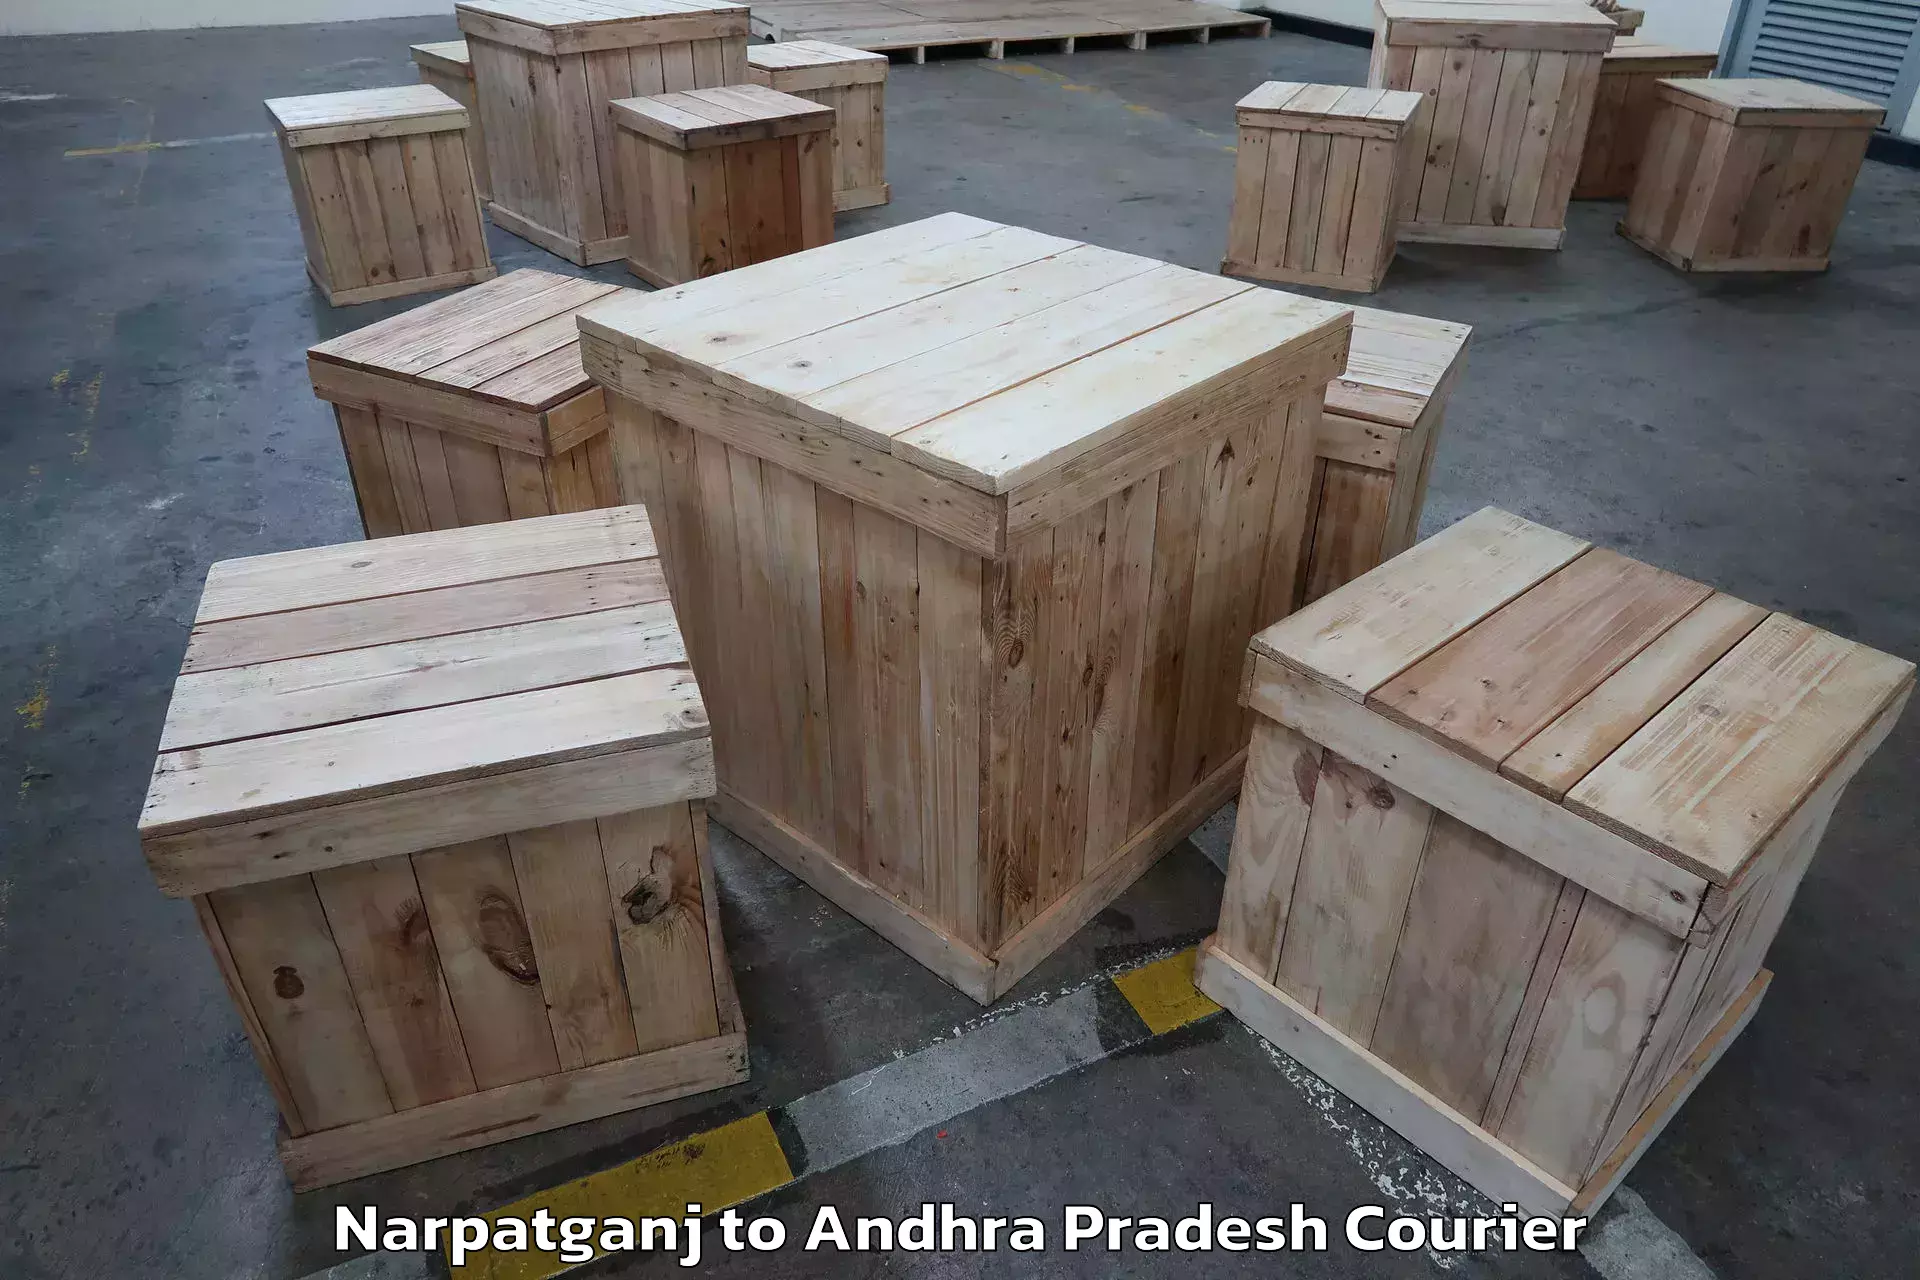 Stress-free household moving Narpatganj to Hindupur